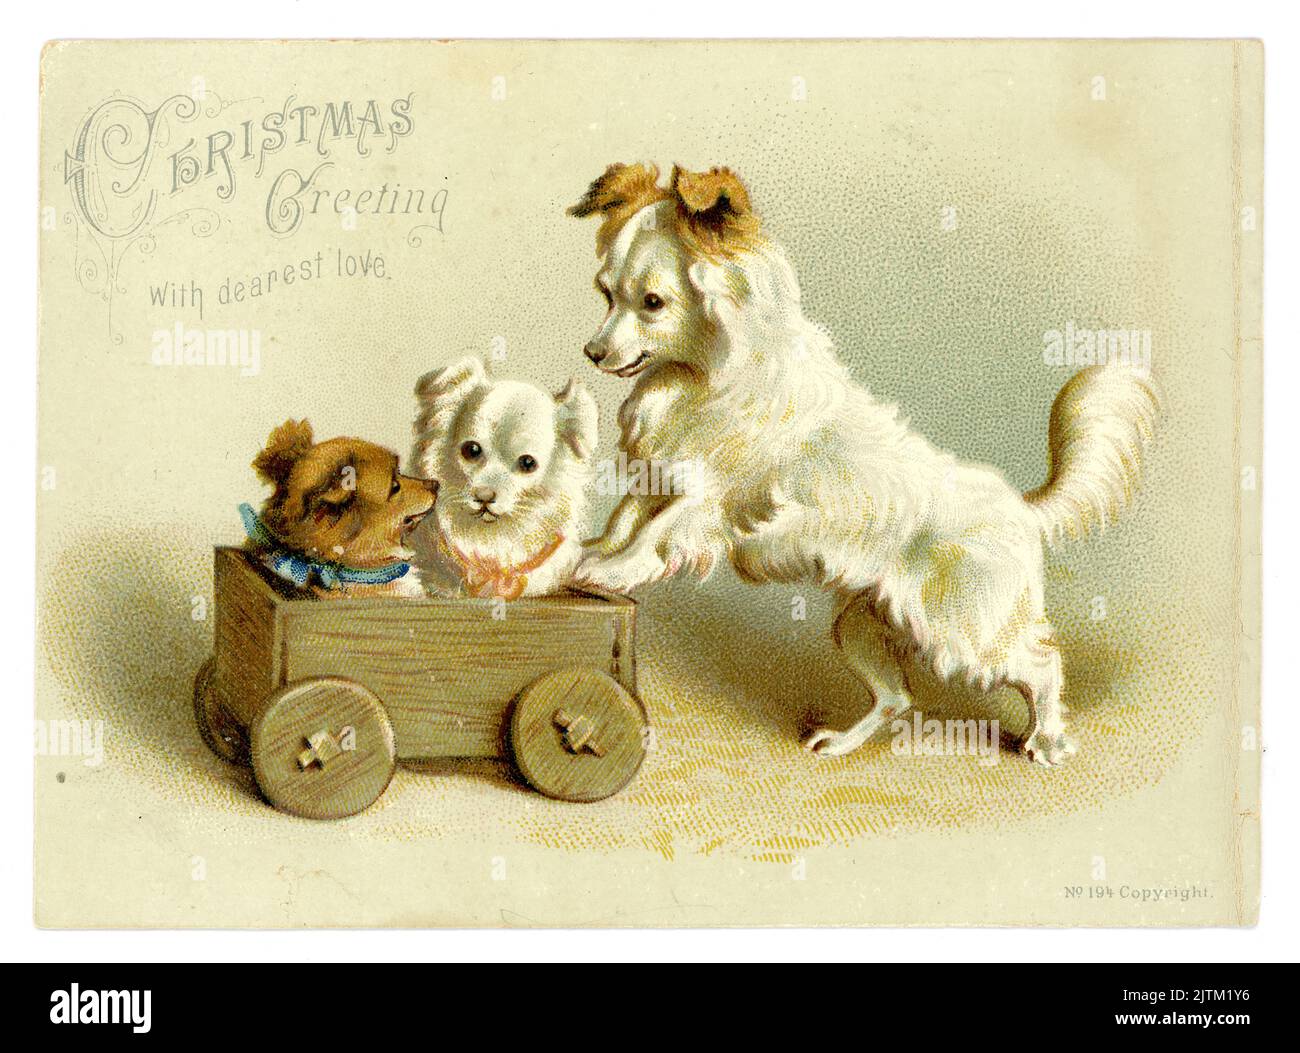 Original, charmante carte de voeux victorienne de chien terrier mignon poussant deux chiots dans un camion en bois jouet ou un chariot, voeux de Noël avec l'amour le plus cher, circa 1890's, Royaume-Uni Banque D'Images